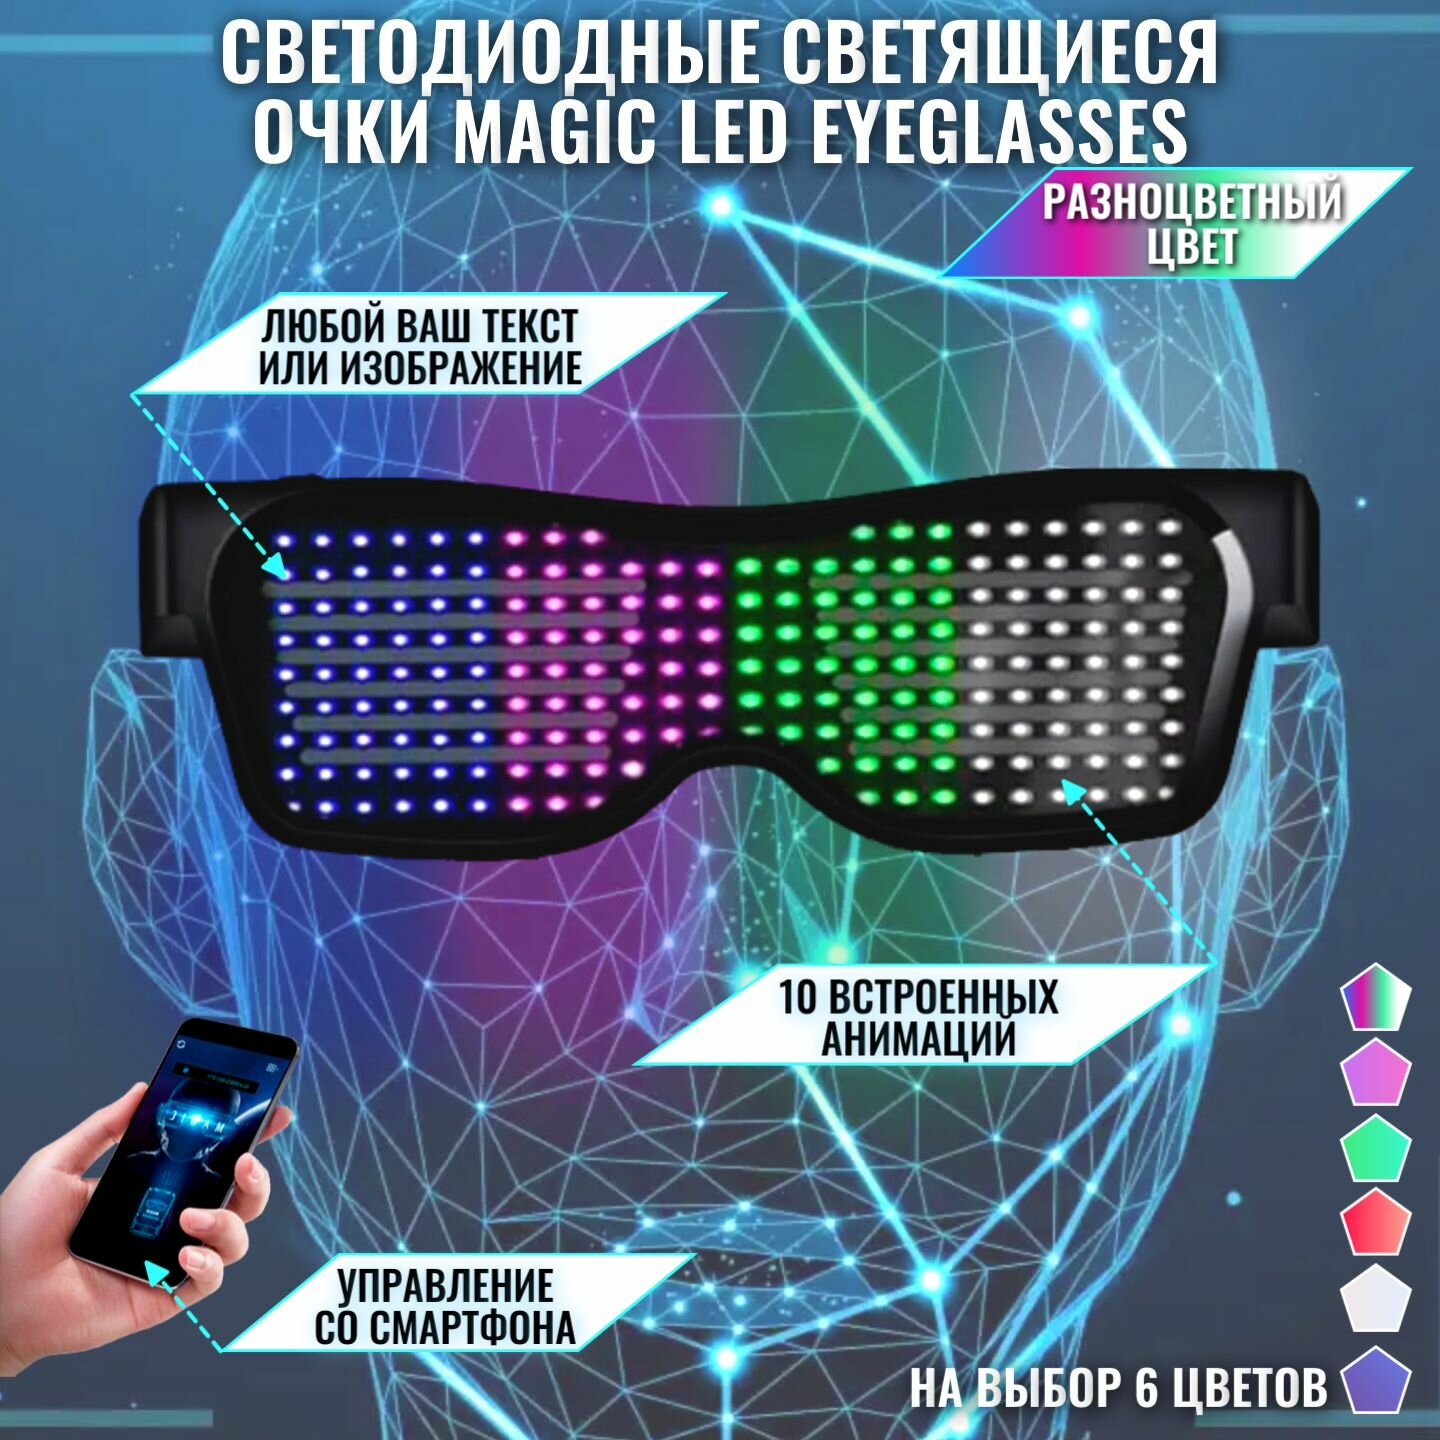 Светодиодные светящиеся очки Magic LED Eyeglasses Bluetooth разноцветные